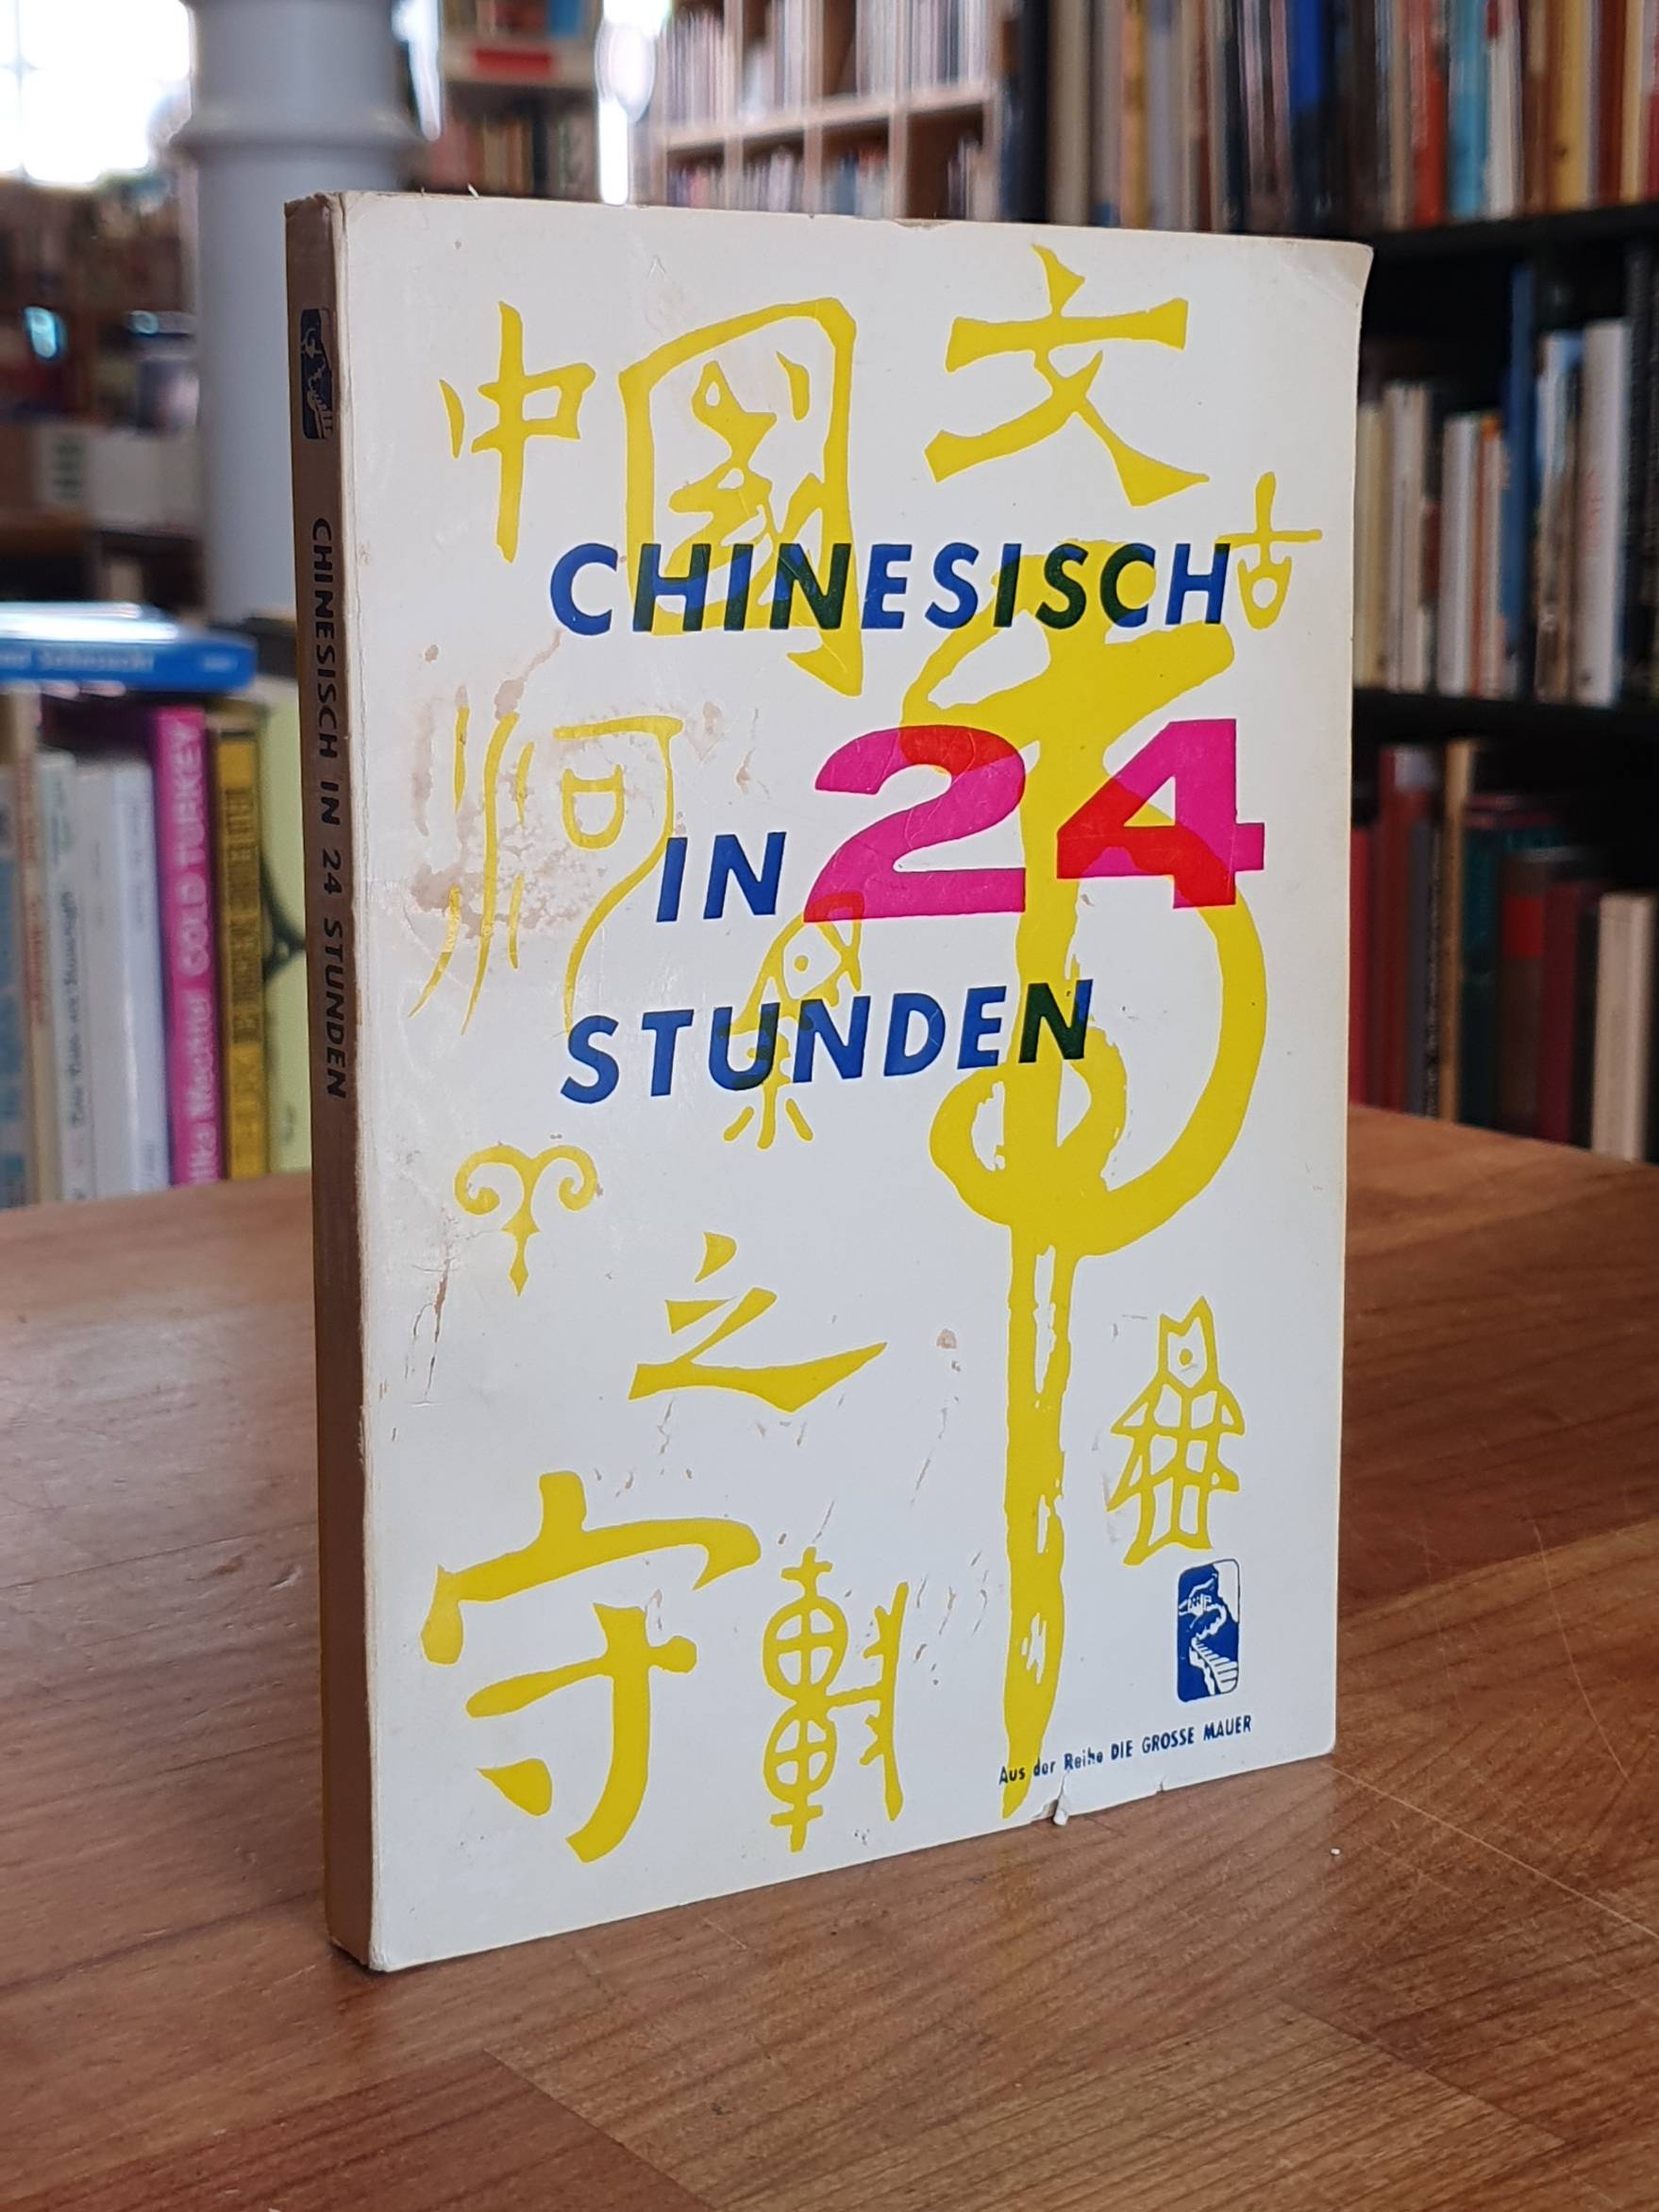 Chinesisch / China im Aufbau (Hrsg.), Chinesisch in 24 Stunden. Aus der Reihe „D